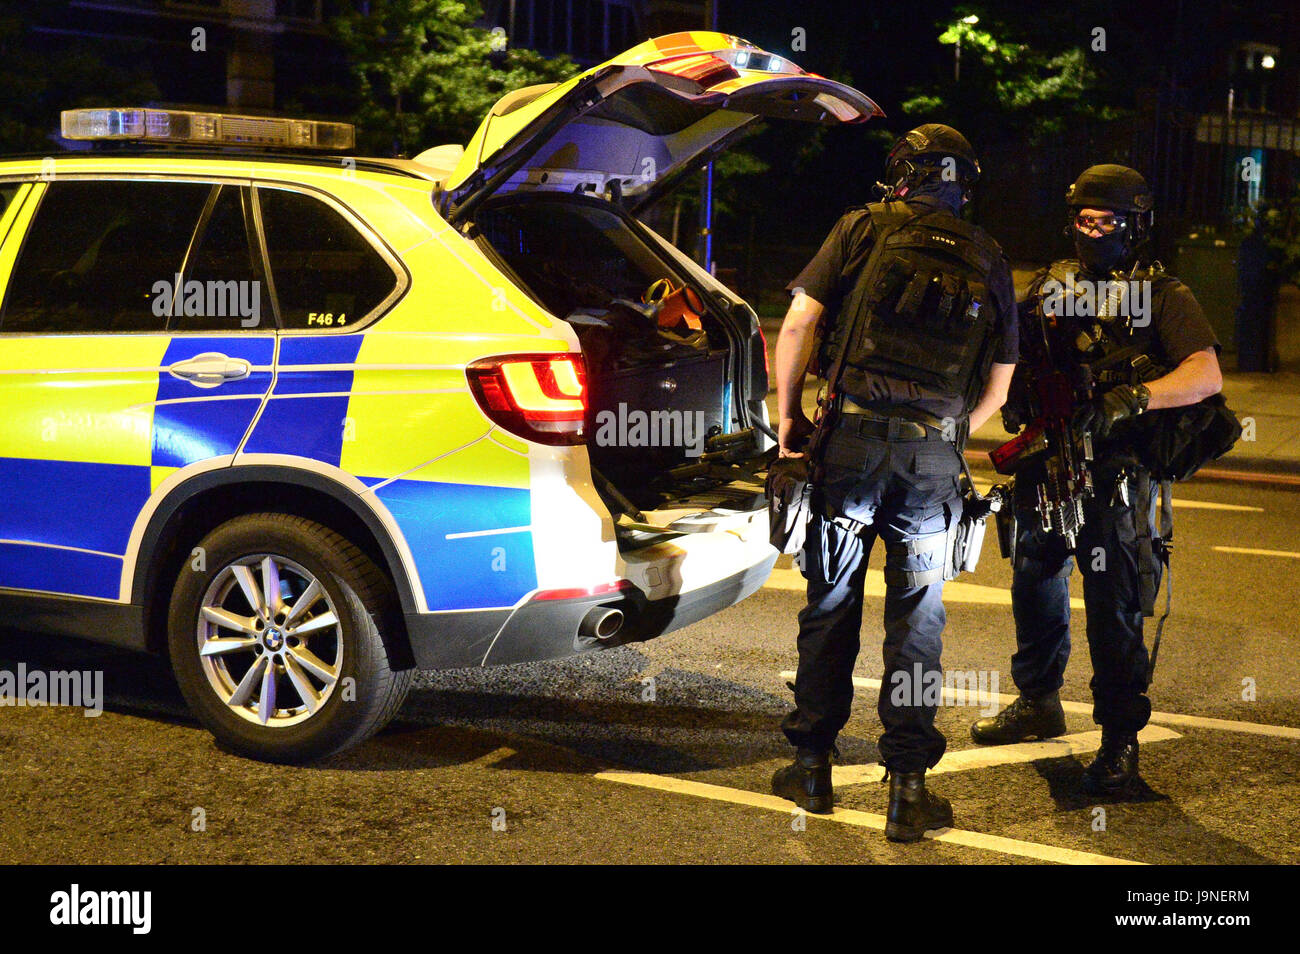 La policía armada en la calle Borough High Street como policía ha confirmado que los incidentes en el puente de Londres y el mercado Borough son 'incidentes terroristas', tras los informes de un vehículo que araba a peatones en un puente y apuñalados. Foto de stock